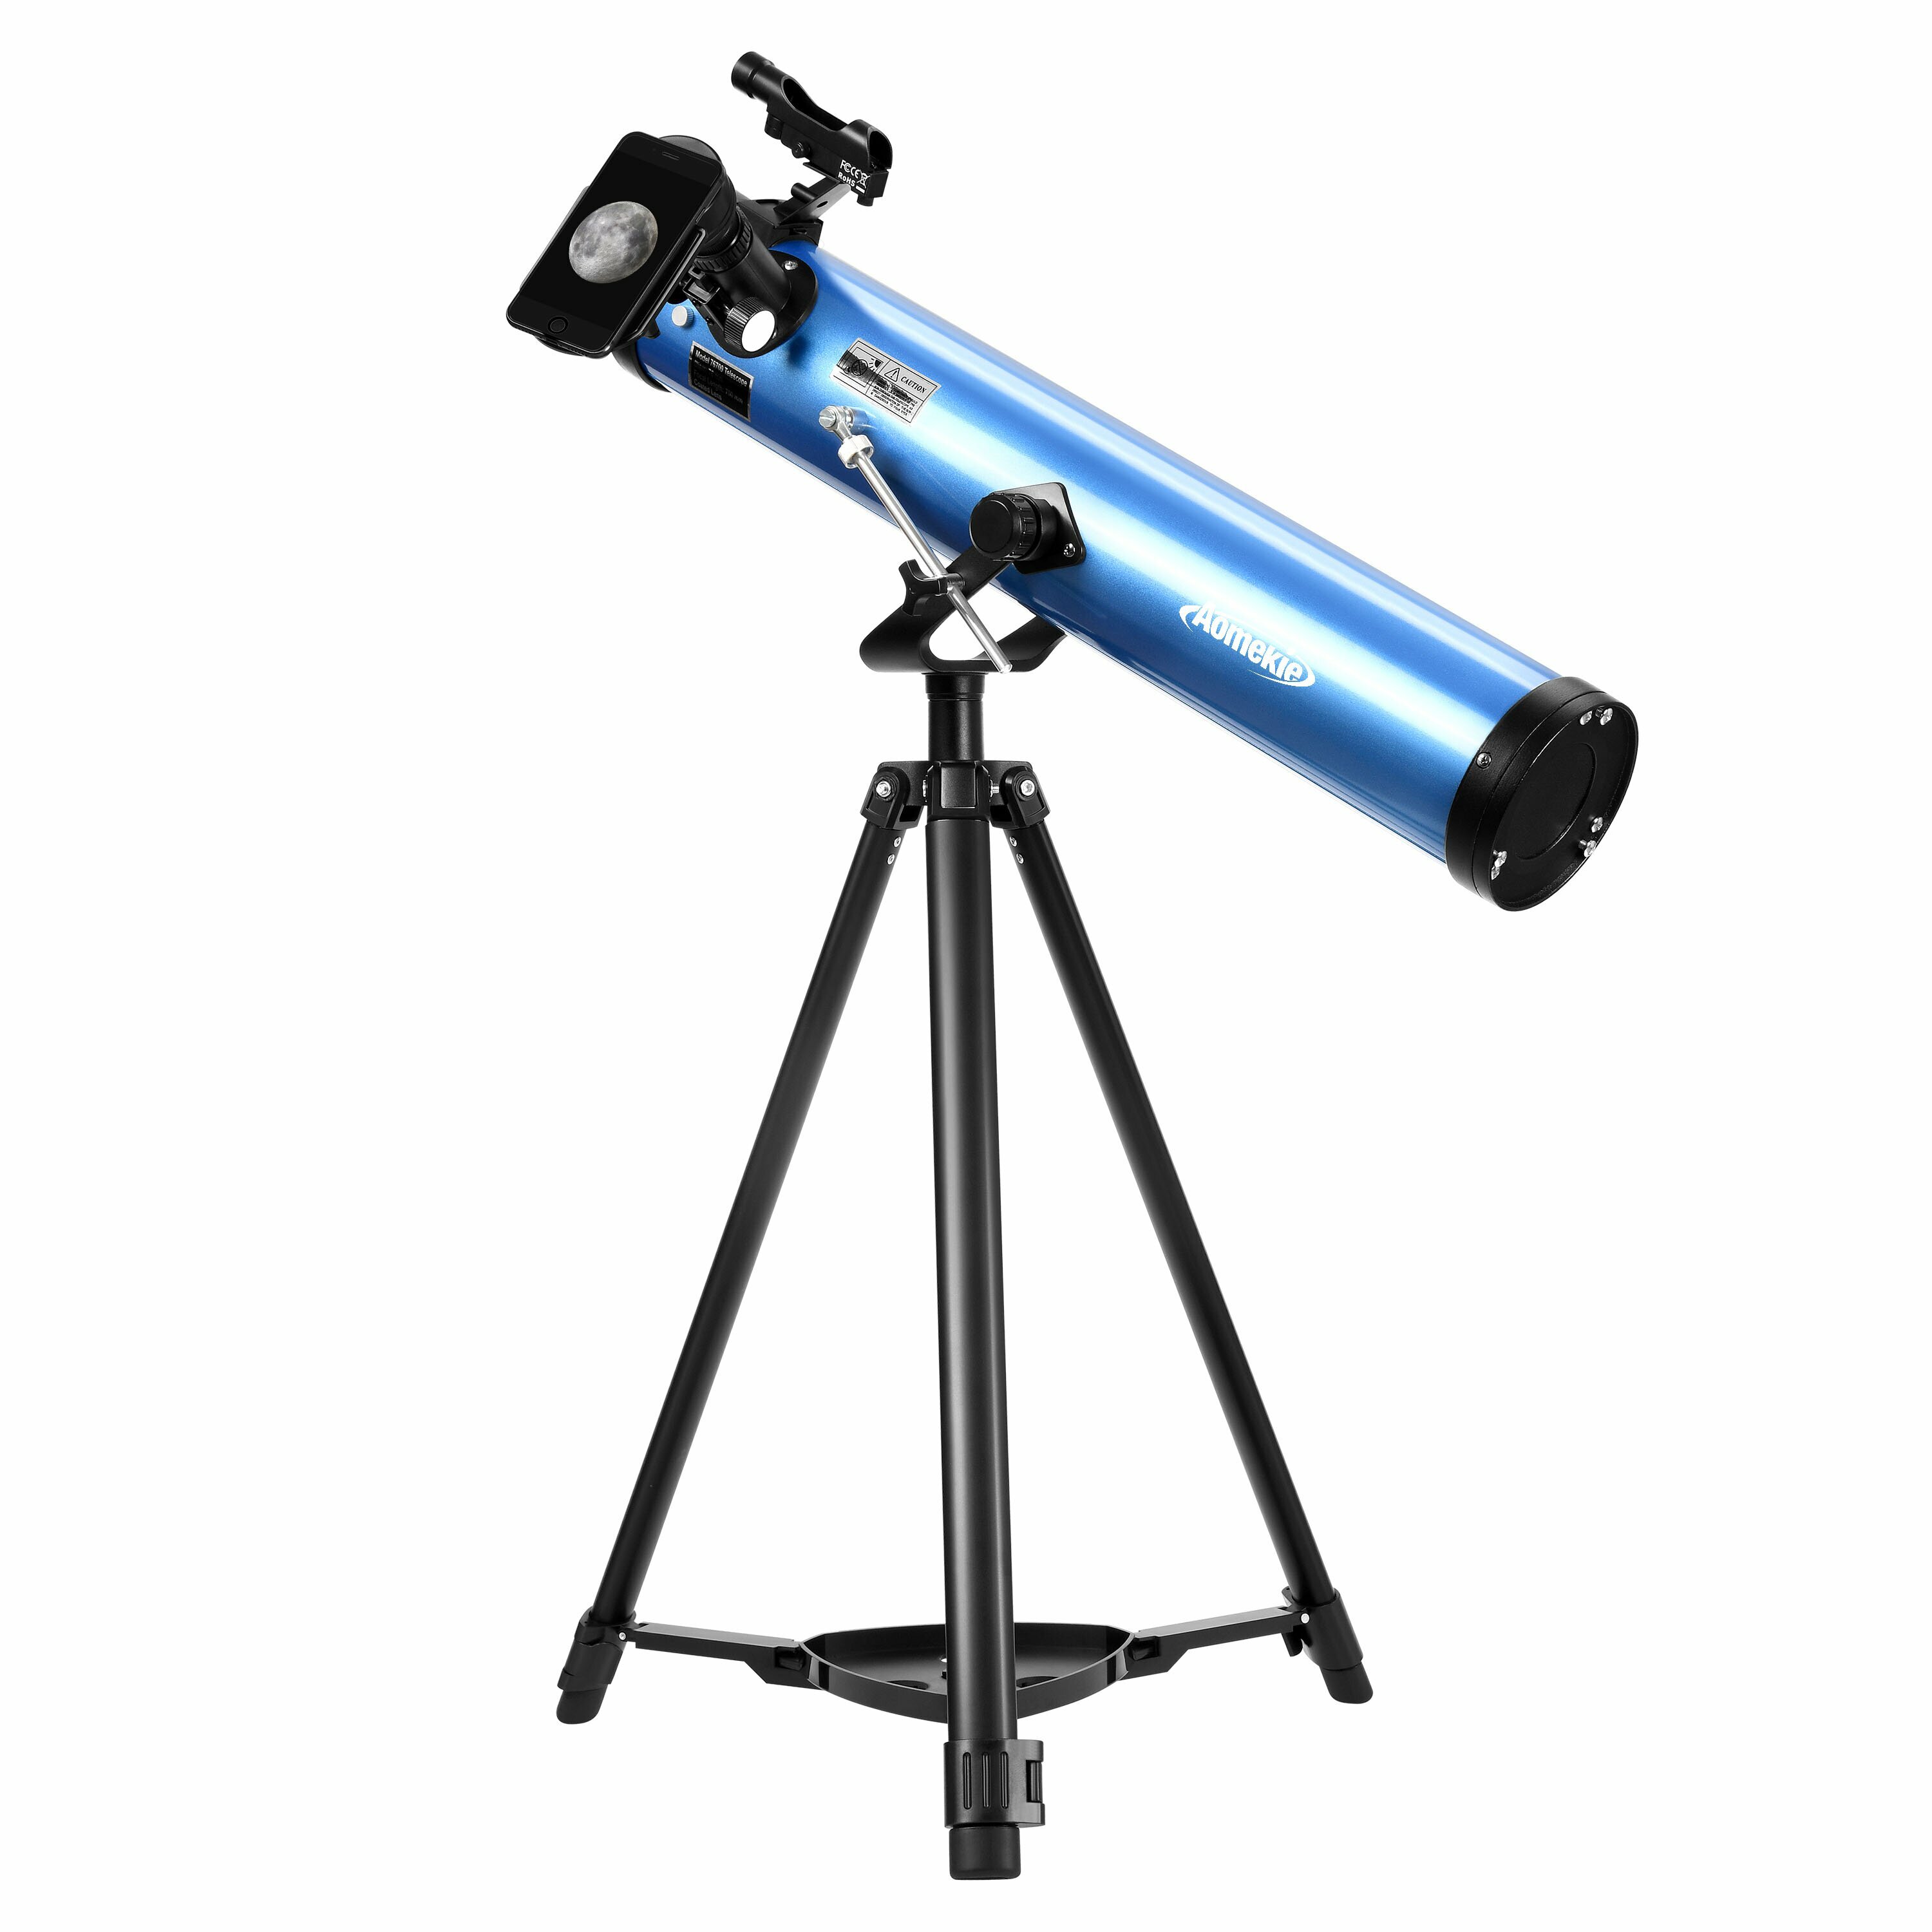 [EU Direkt] AOMEKIE Reflektor Teleskoper for Voksne Astronomi Nybegynnere 76mm/700mm med Telefonadapter Bluetooth Kontroller Stativ Finderscope og Månefilter A02018